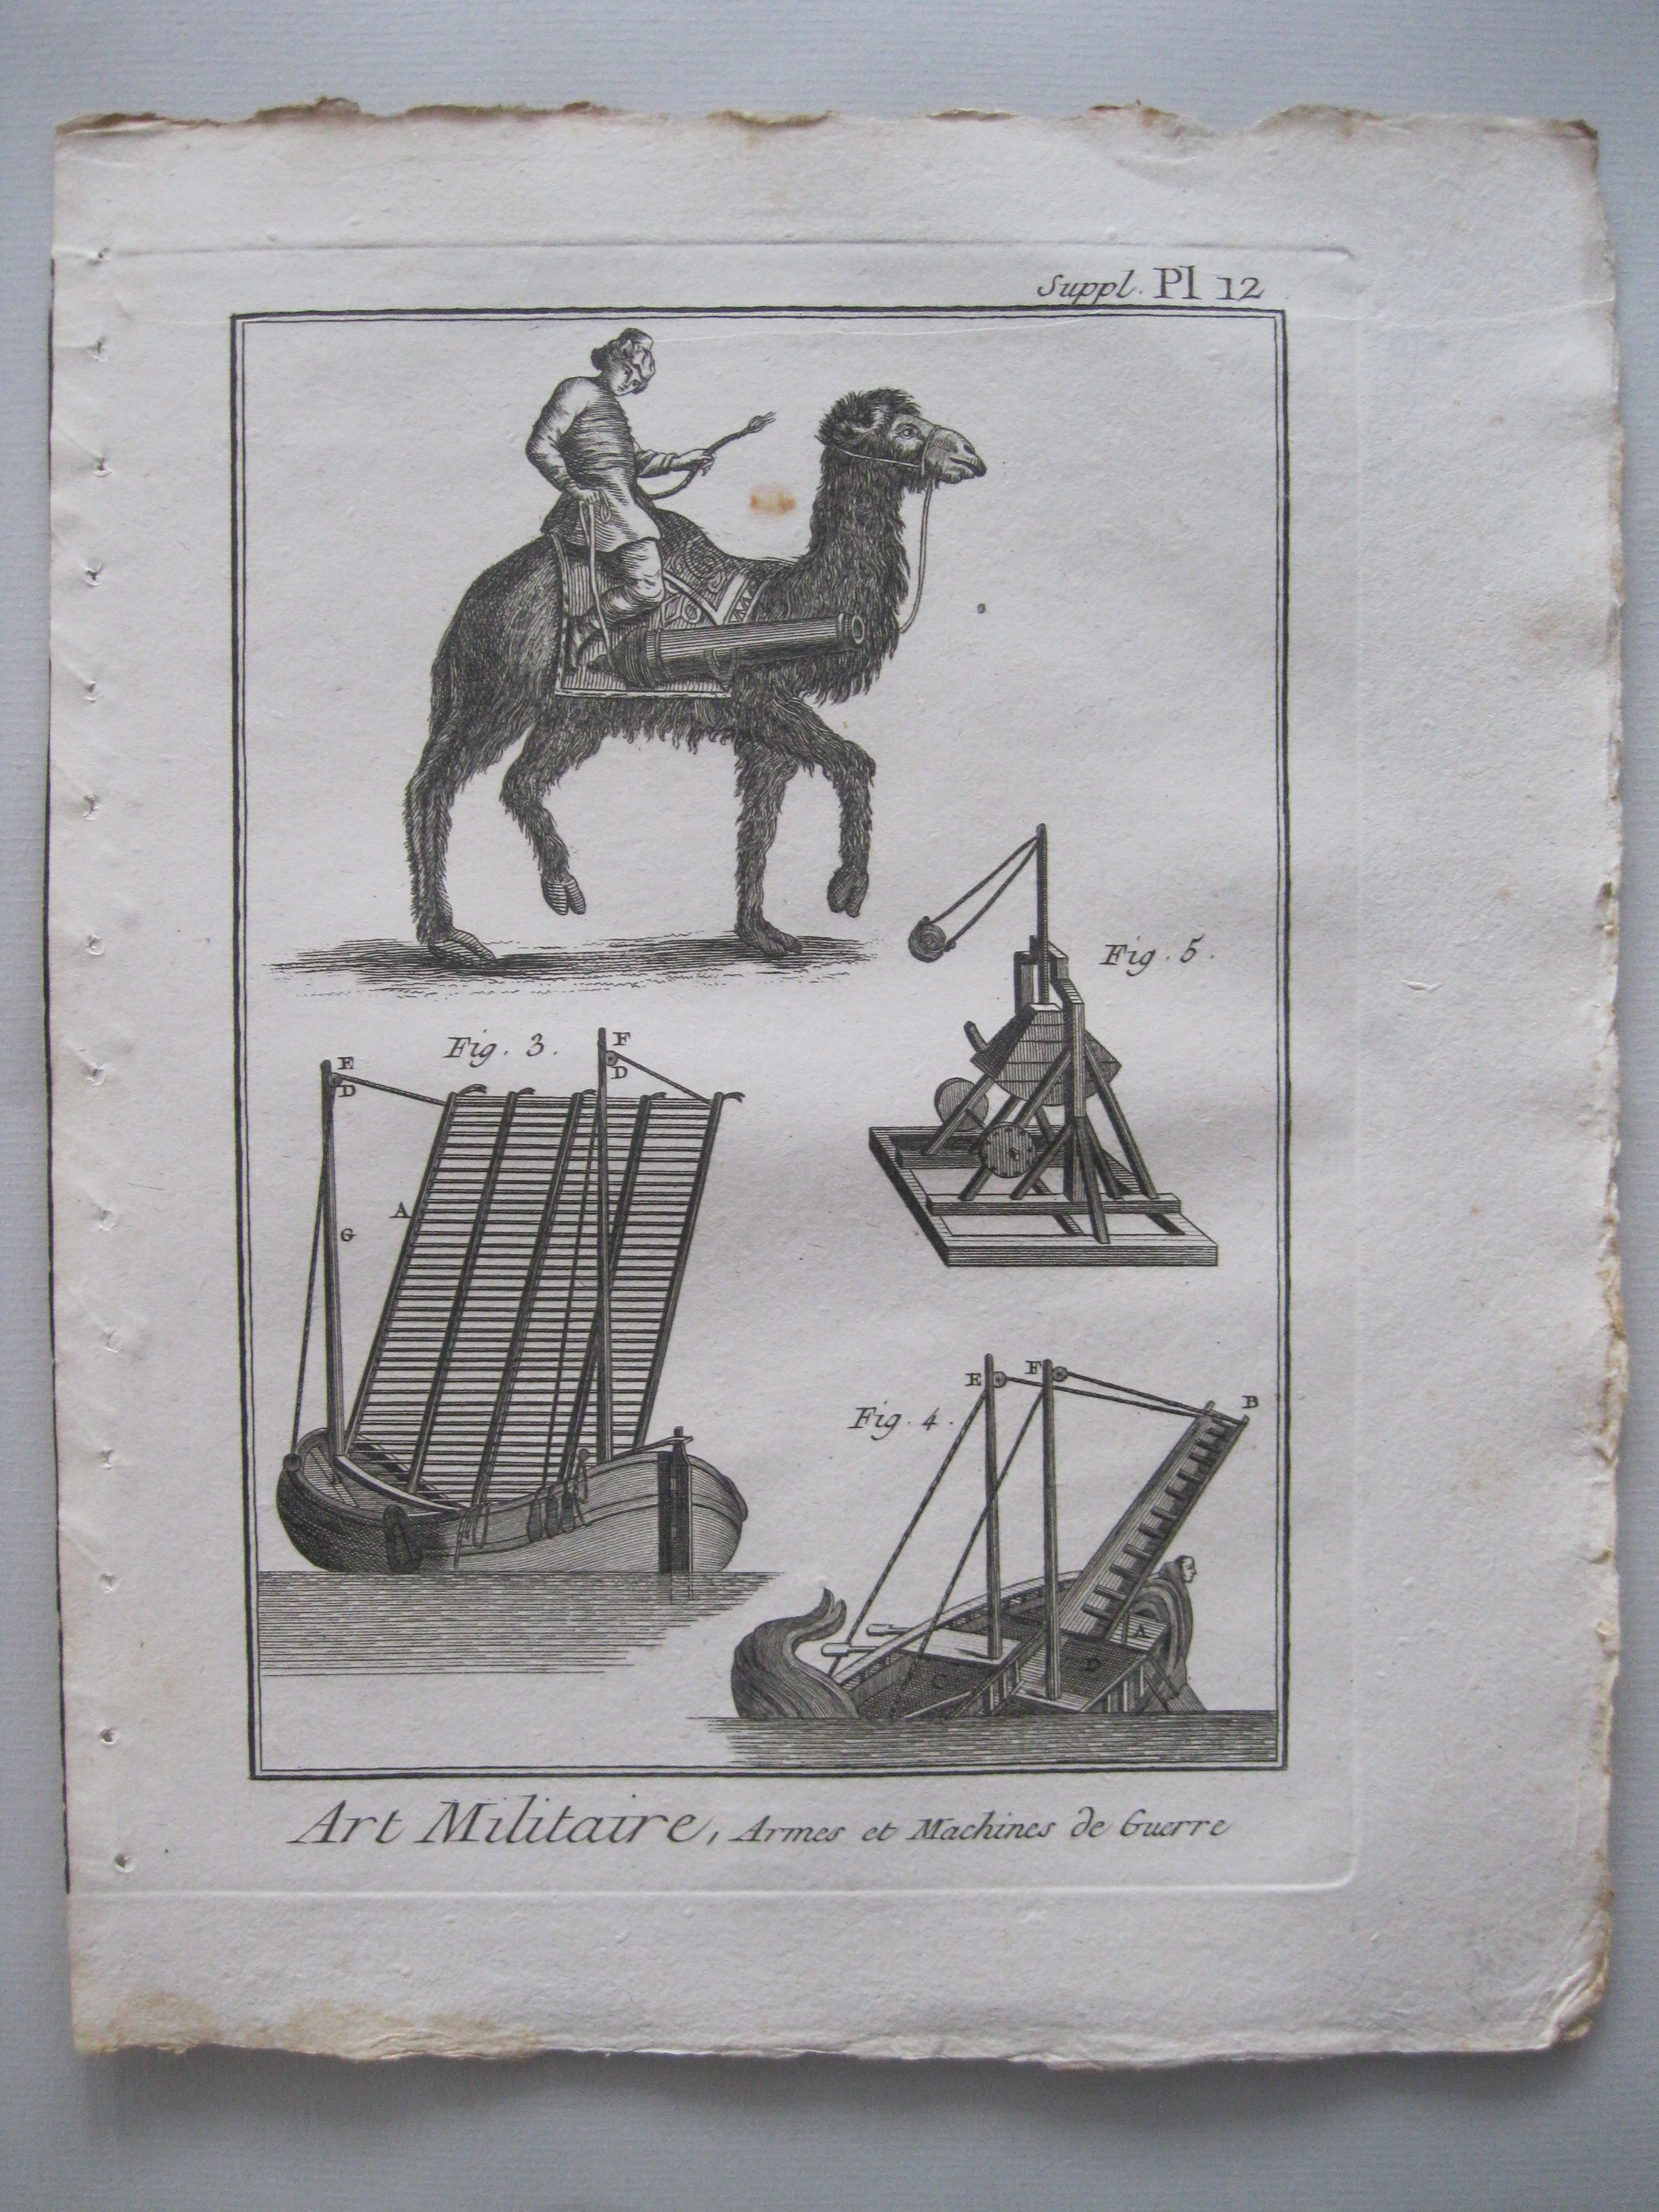 Arte militar VII.Armas y máquinas de guerra.Diderot et D'Alembert, 1779